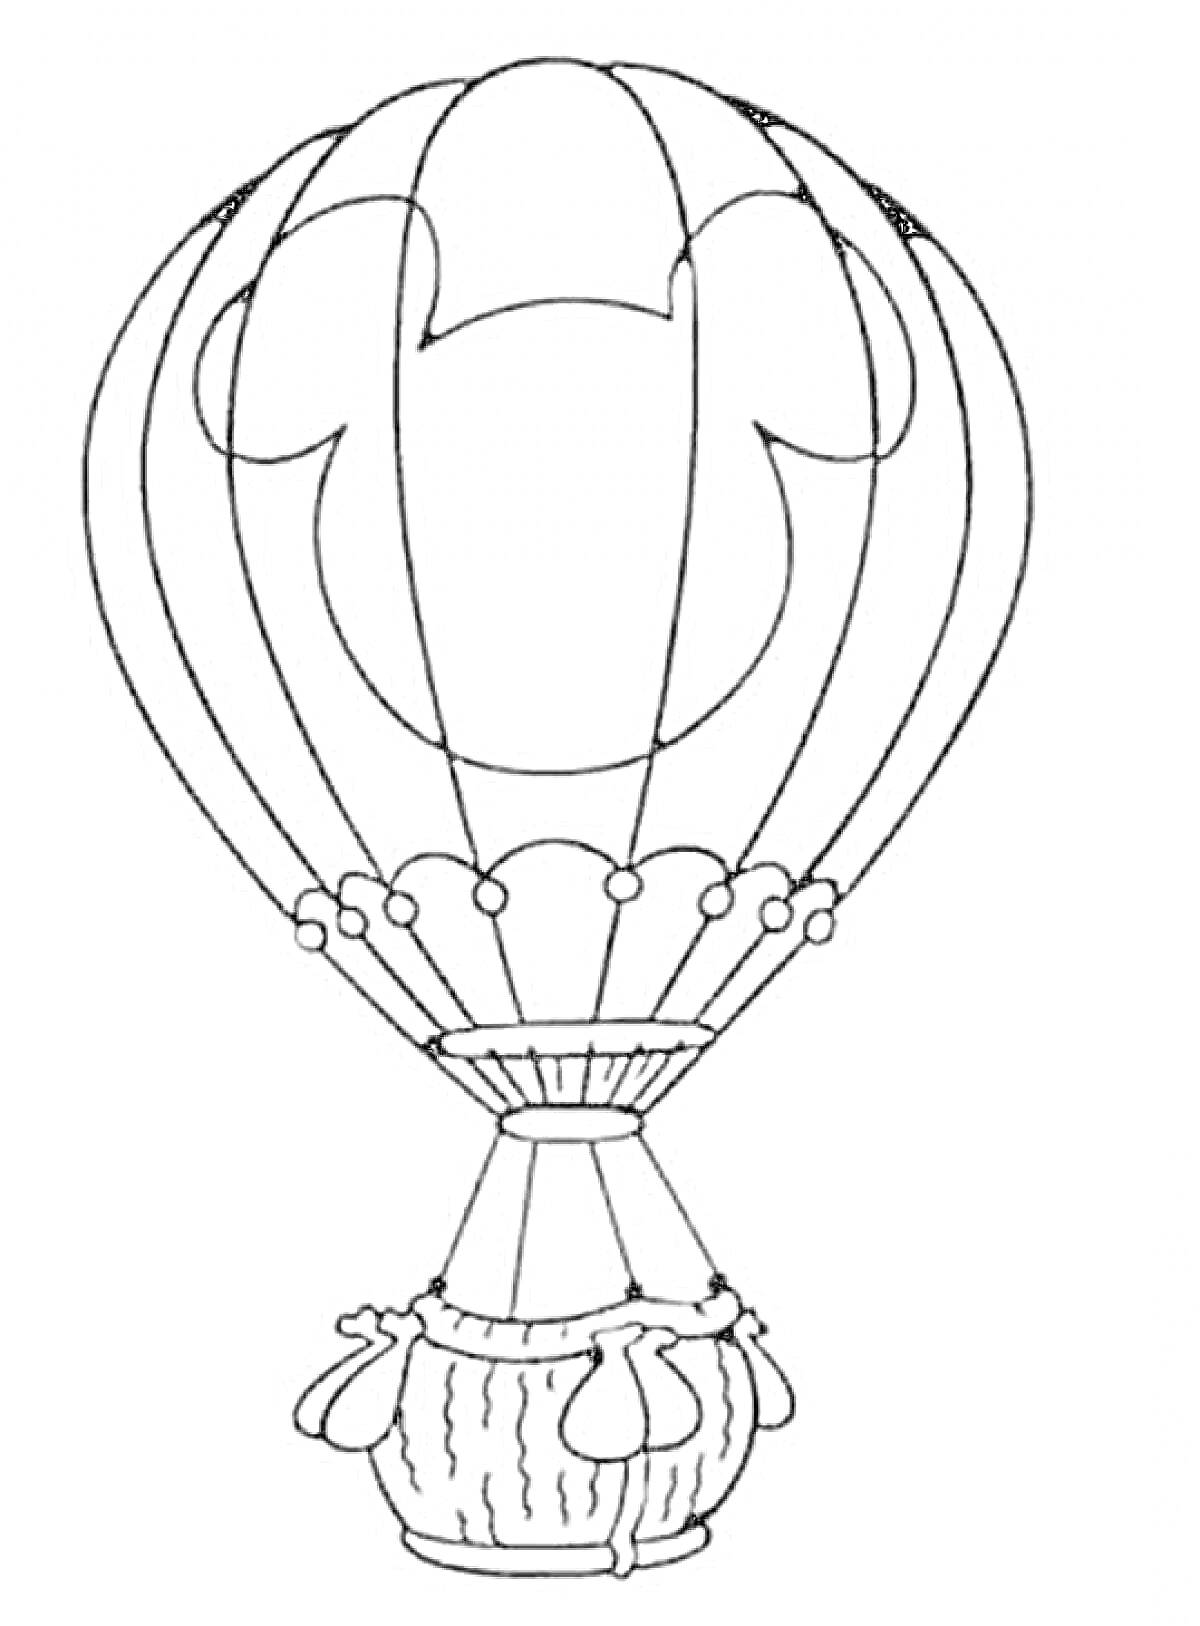 Раскраска Воздушный шар с корзиной и сюжетным рисунком, включающим формой, напоминающей уши